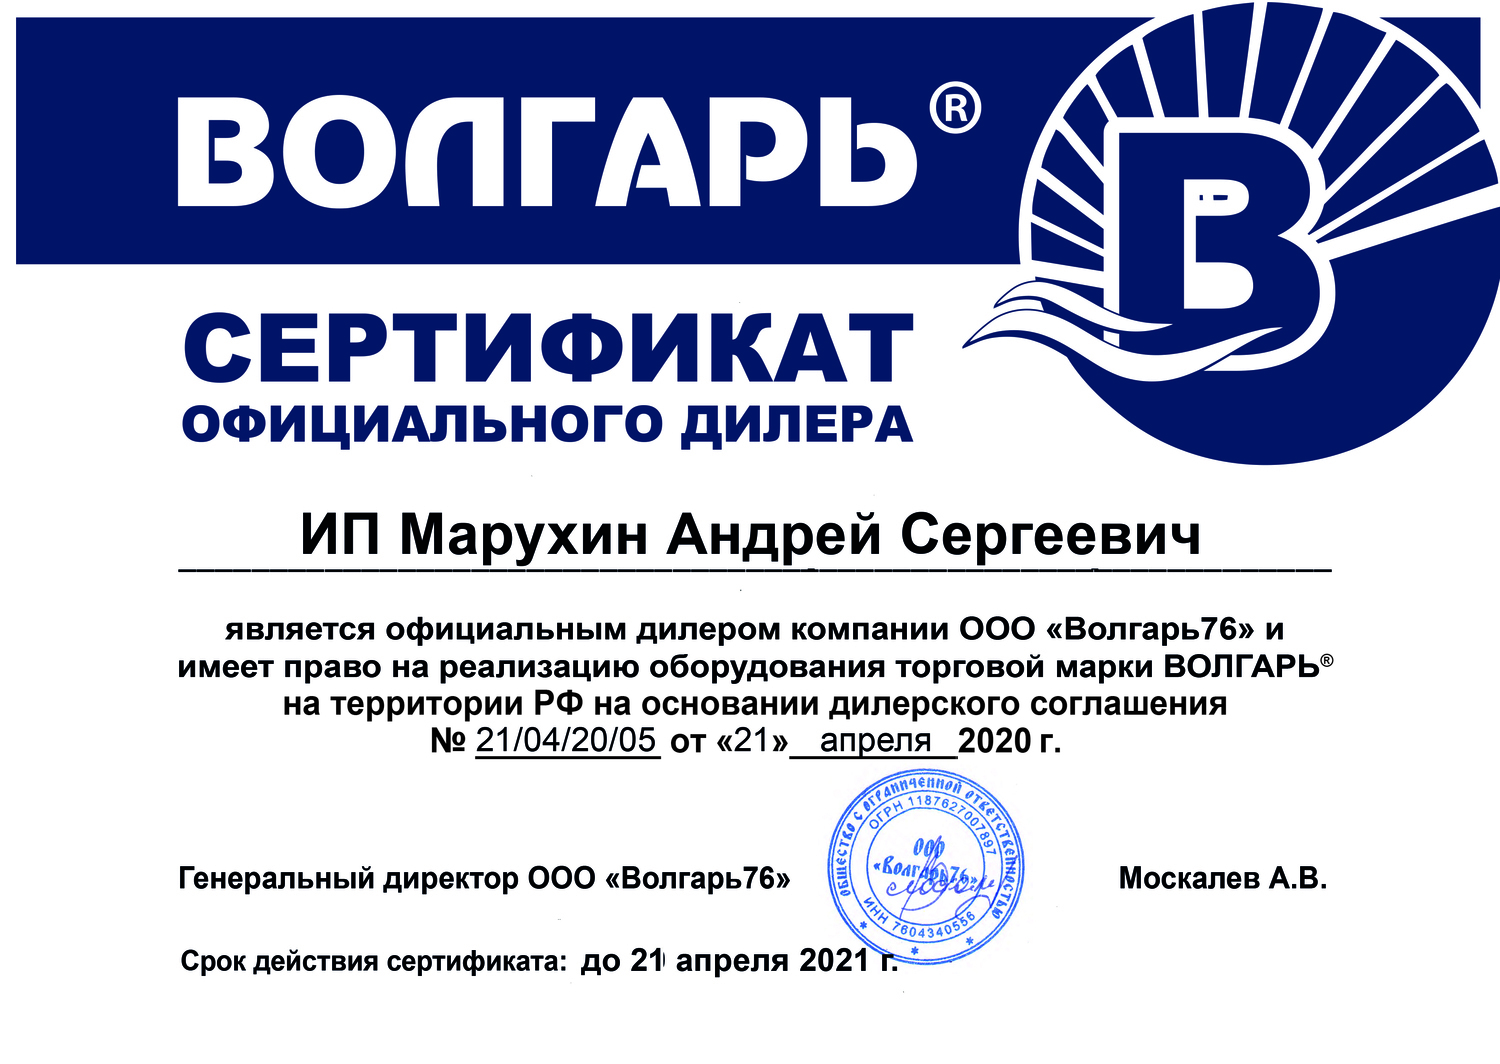 Септик Эко (septiceco) - сертификат дилера ВОЛГАРЬ и Garda